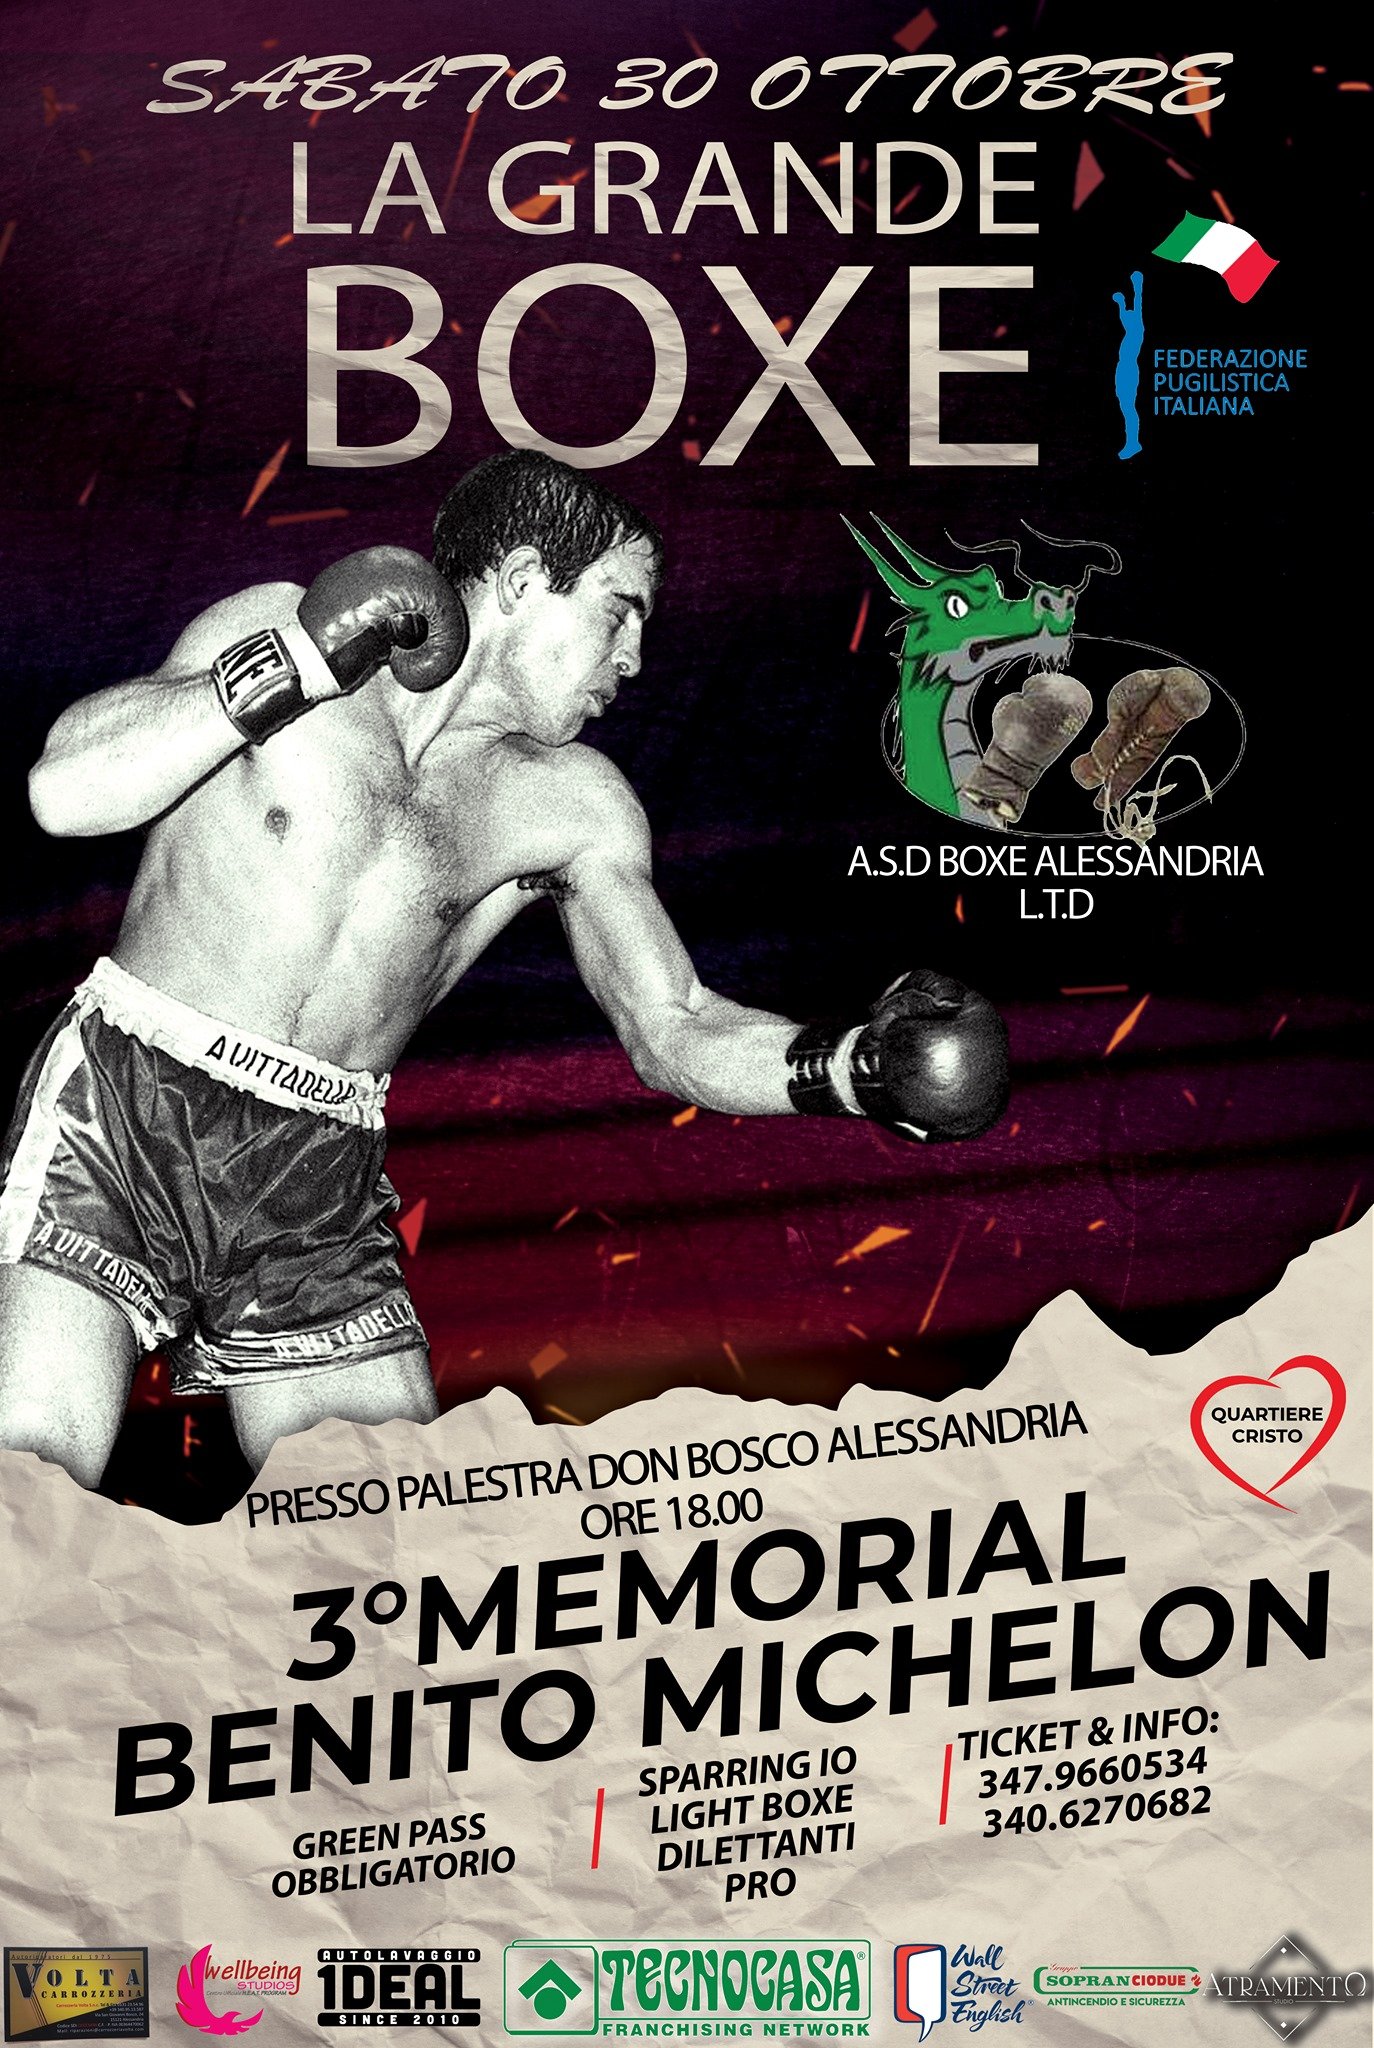 La grande boxe torna al Quartiere Cristo di Alessandria: il 30 ottobre il Memorial Benito Michelon